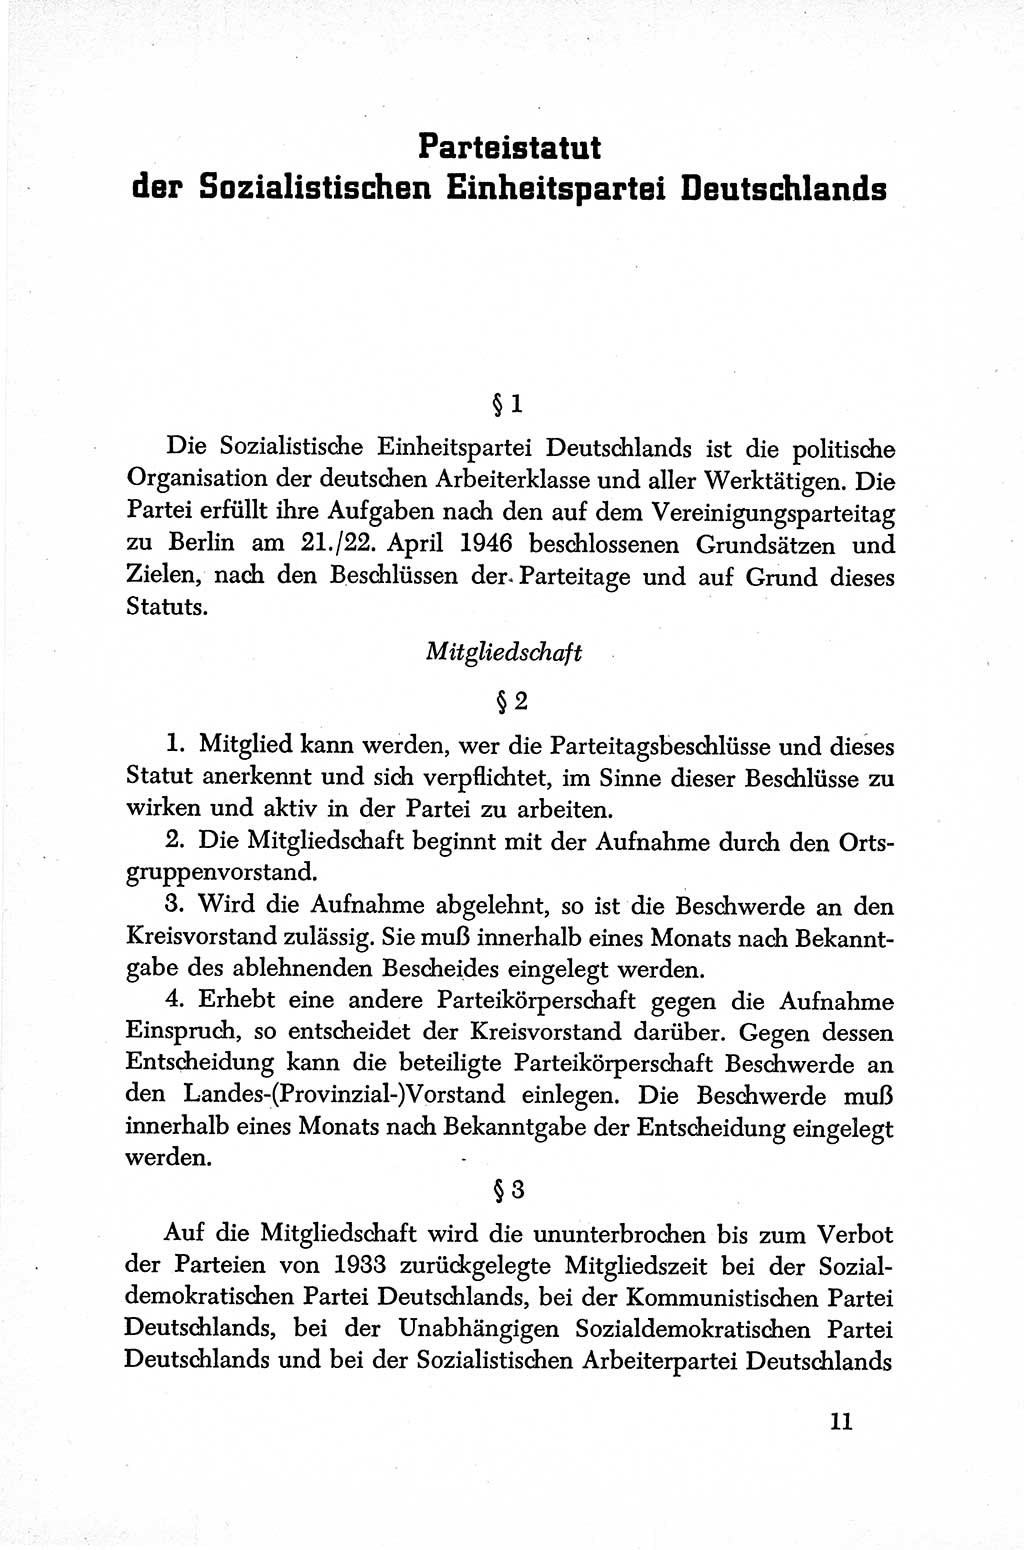 Dokumente der Sozialistischen Einheitspartei Deutschlands (SED) [Sowjetische Besatzungszone (SBZ) Deutschlands] 1946-1948, Seite 11 (Dok. SED SBZ Dtl. 1946-1948, S. 11)